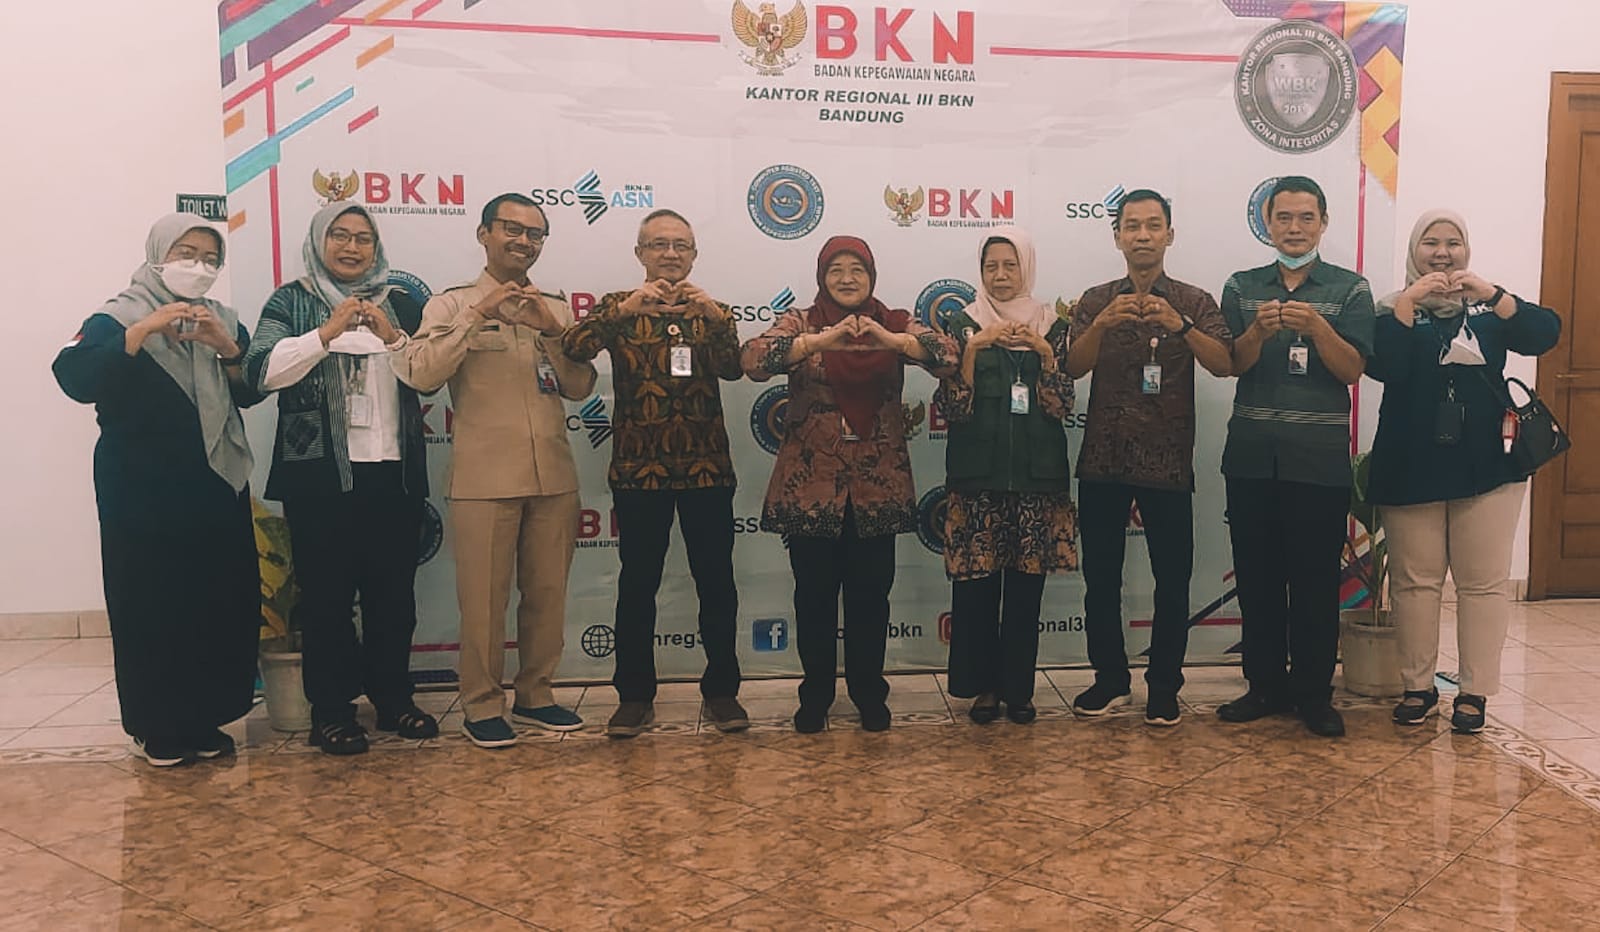 Seleksi Kompetensi PPPK Teknis Formasi Tahun 2022 Titik Lokasi Kantor Regional III BKN Bandung